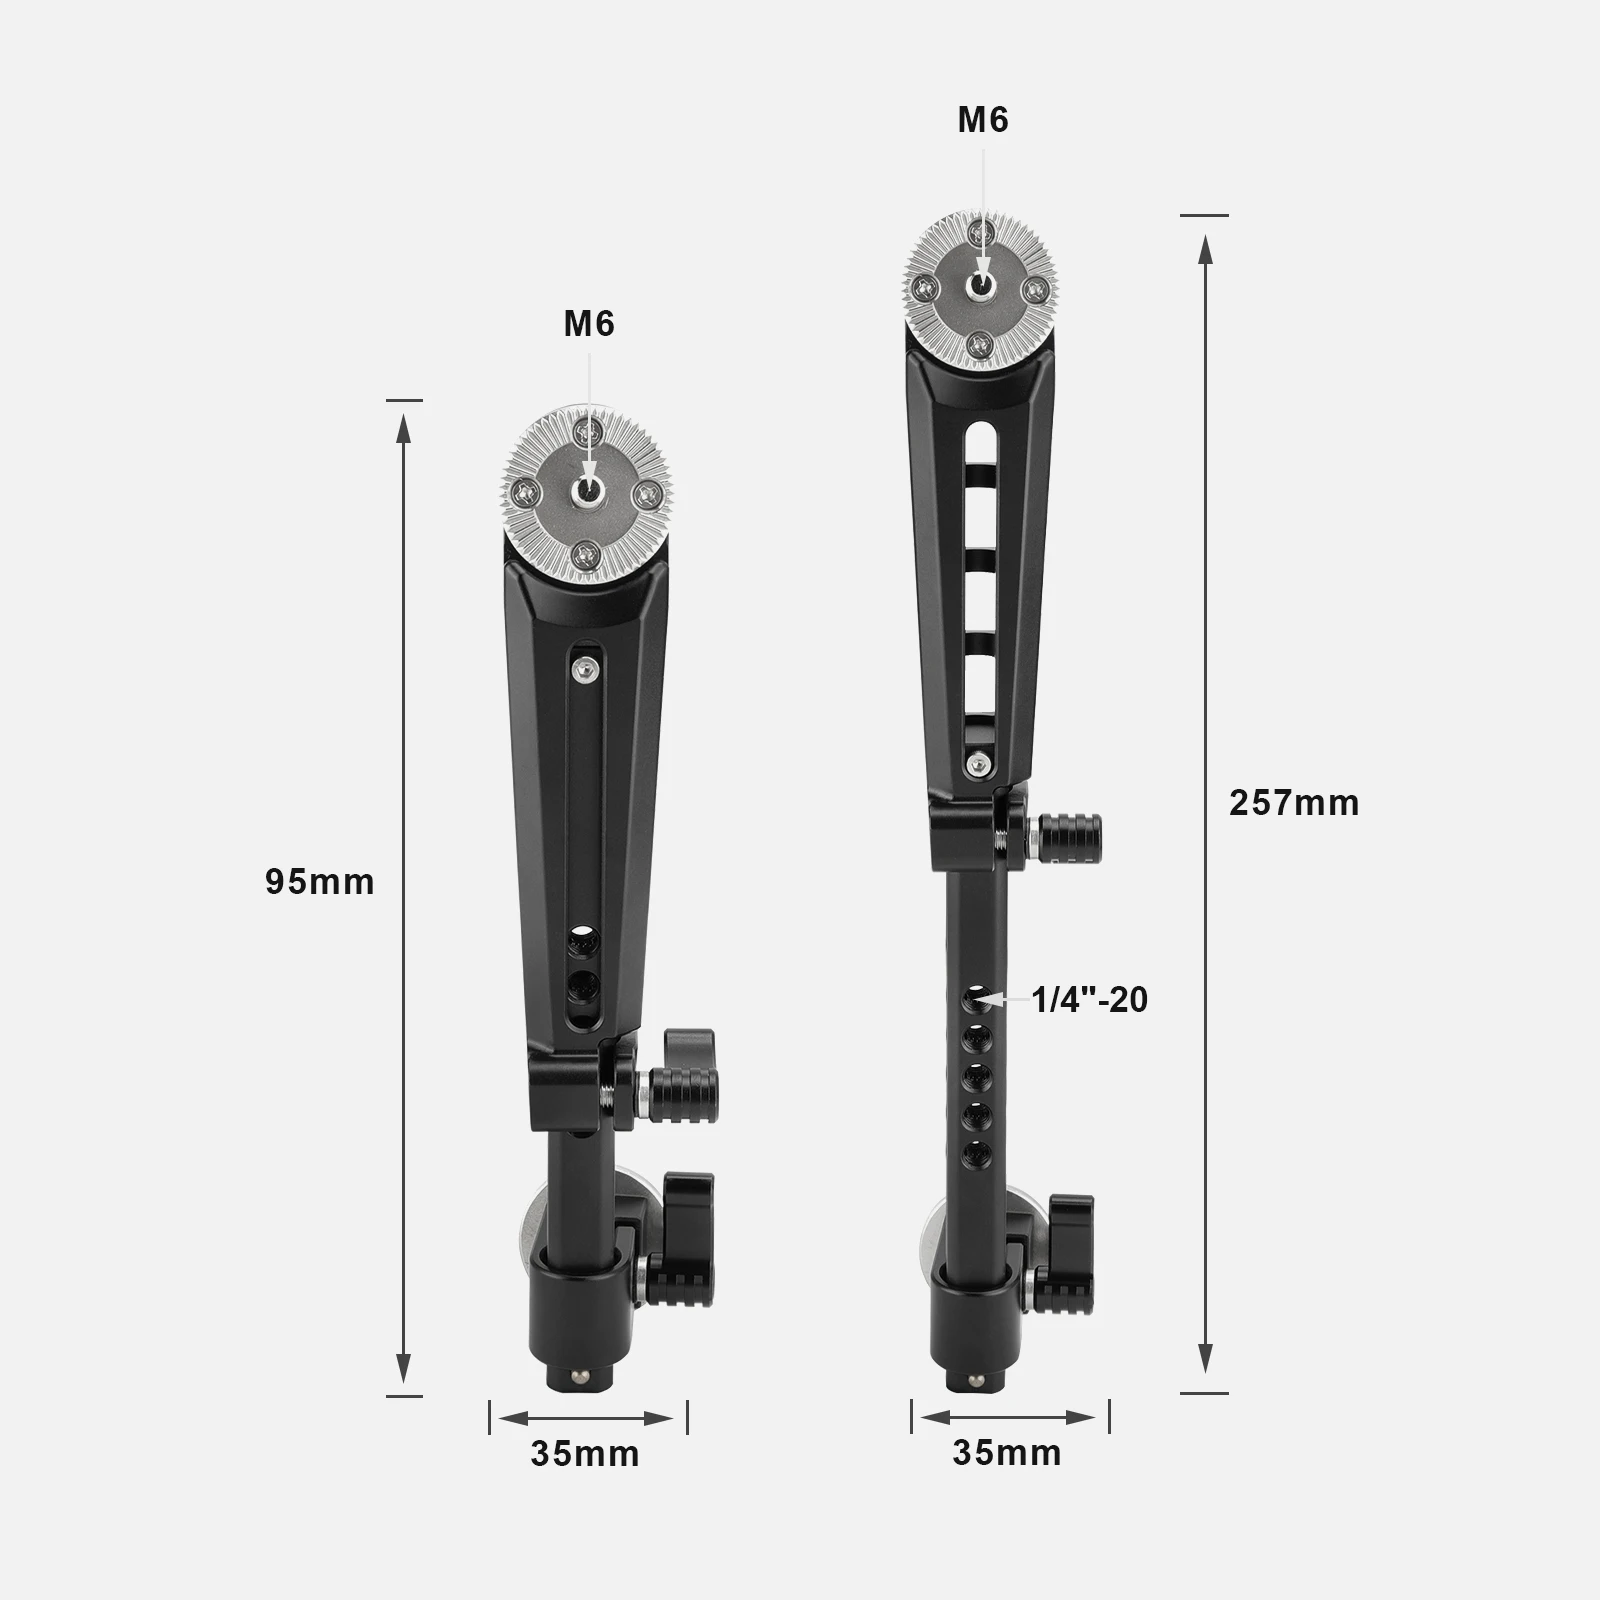 KIMRIG Adjustable Extension Arm With Double M6 Arri Rosette Mounts For Dslr Cameras Shoulder Mount Rig Support System enlarge